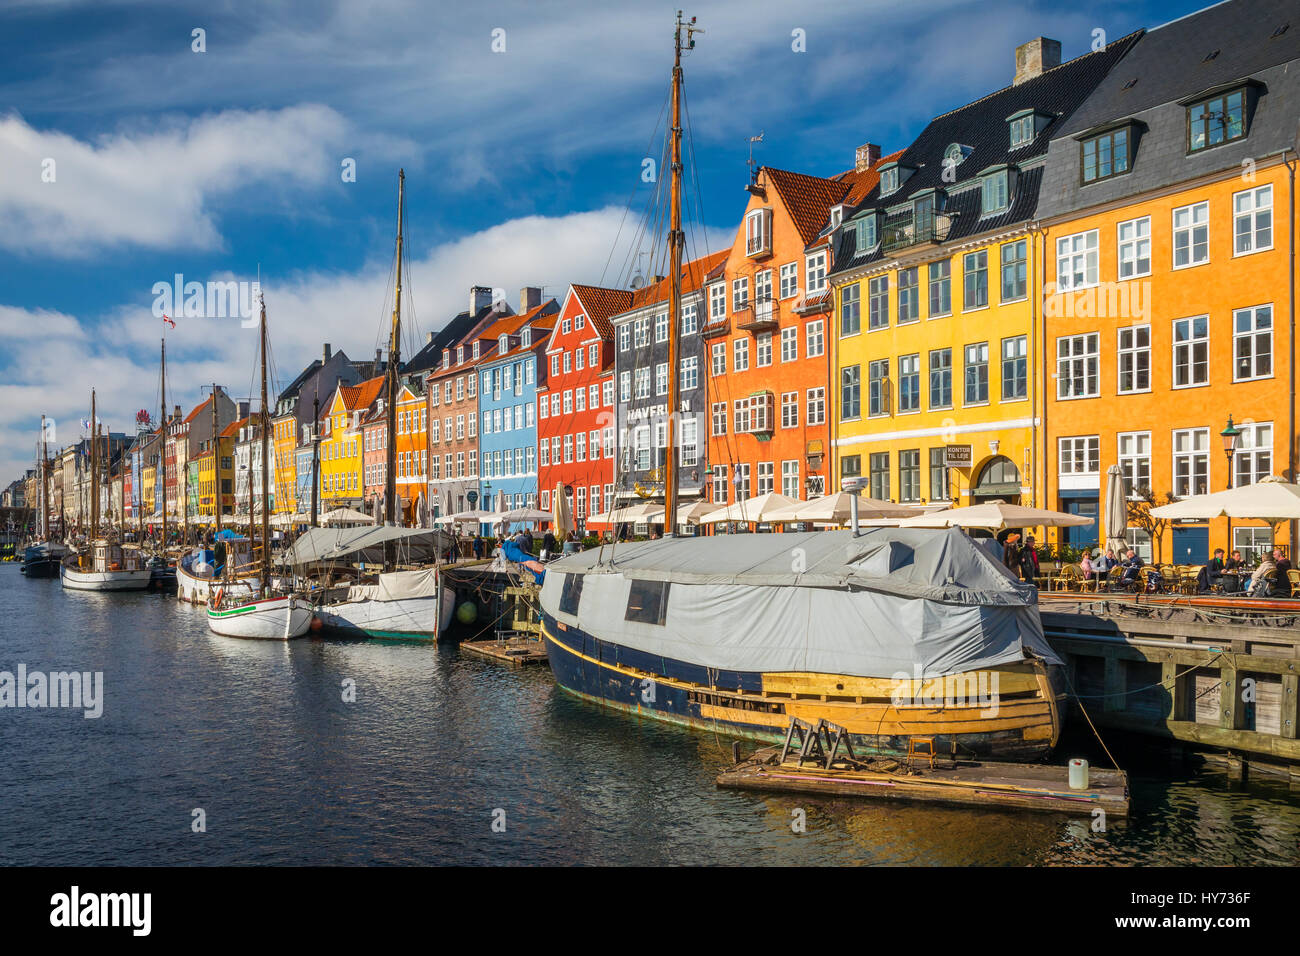 Nyhavn ist eine bunte 17. Jahrhundert am Wasser, Kanal und beliebten Vergnügungsviertel in Kopenhagen, Dänemark. Stockfoto